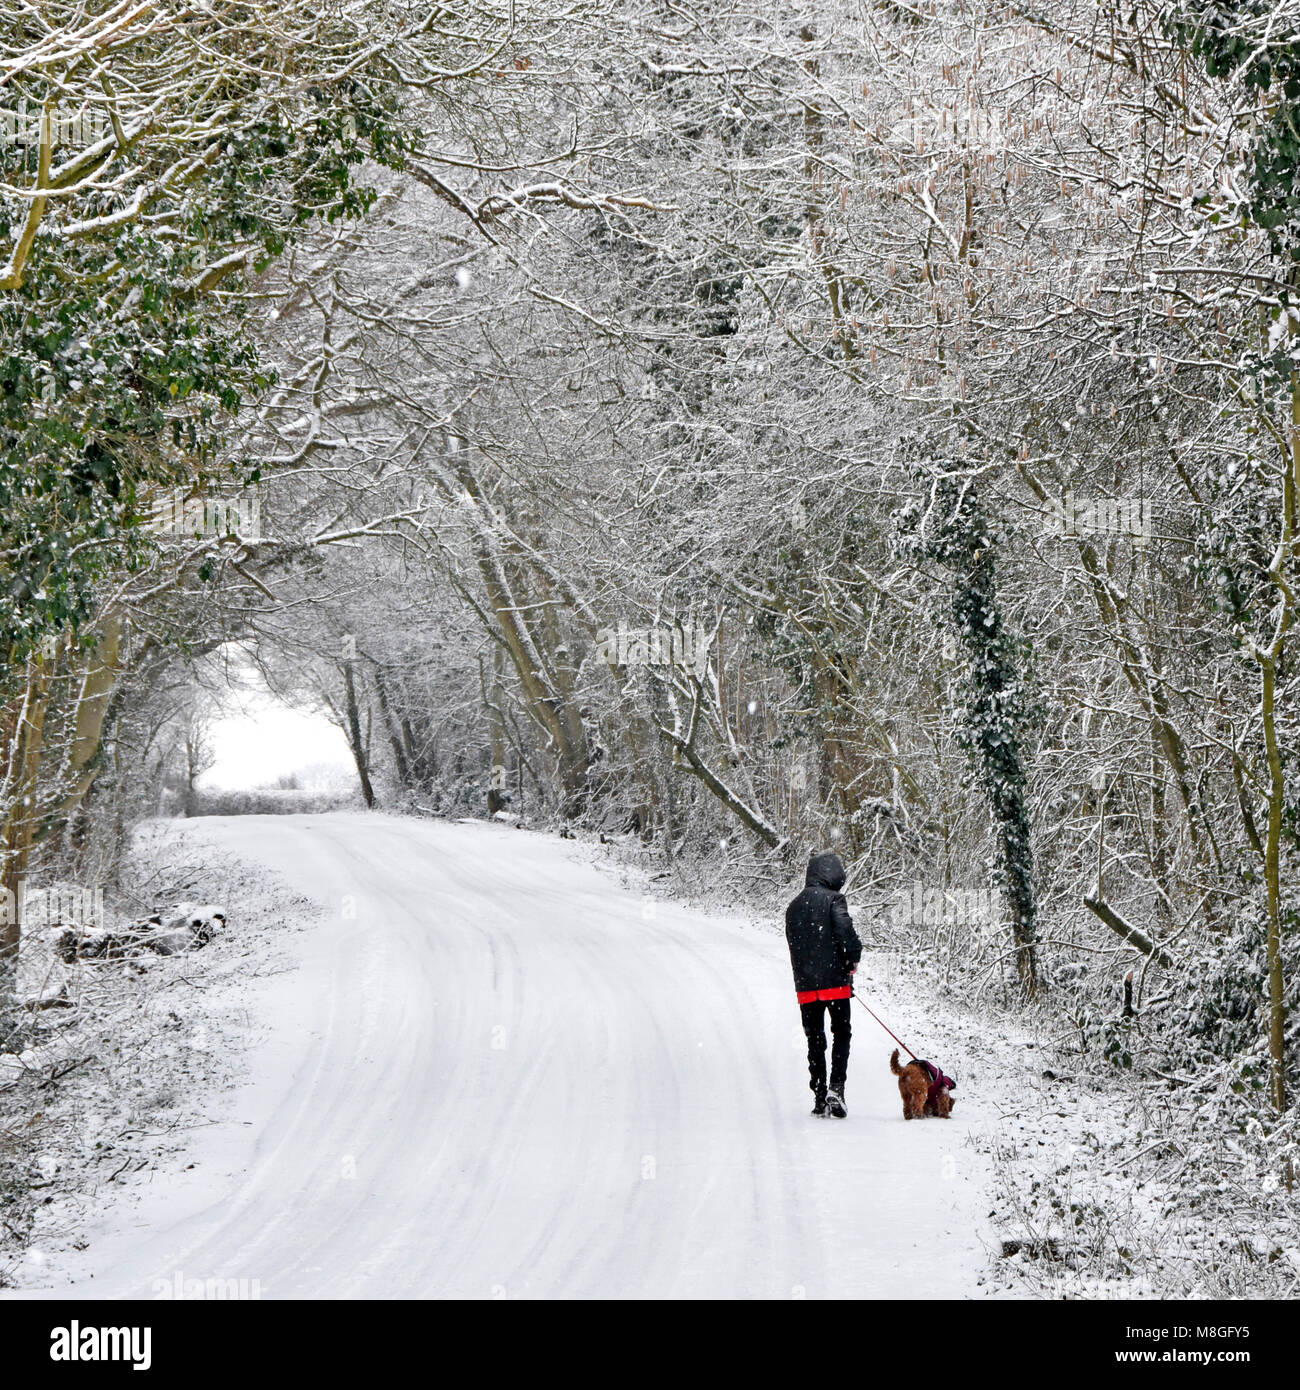 Licht Schnee auf der Straße & junge Frau zu Fuß Hund auf der Leitung, die verschneite Szene country lane im verschneiten Wald Bäume Essex contryside England Großbritannien Stockfoto